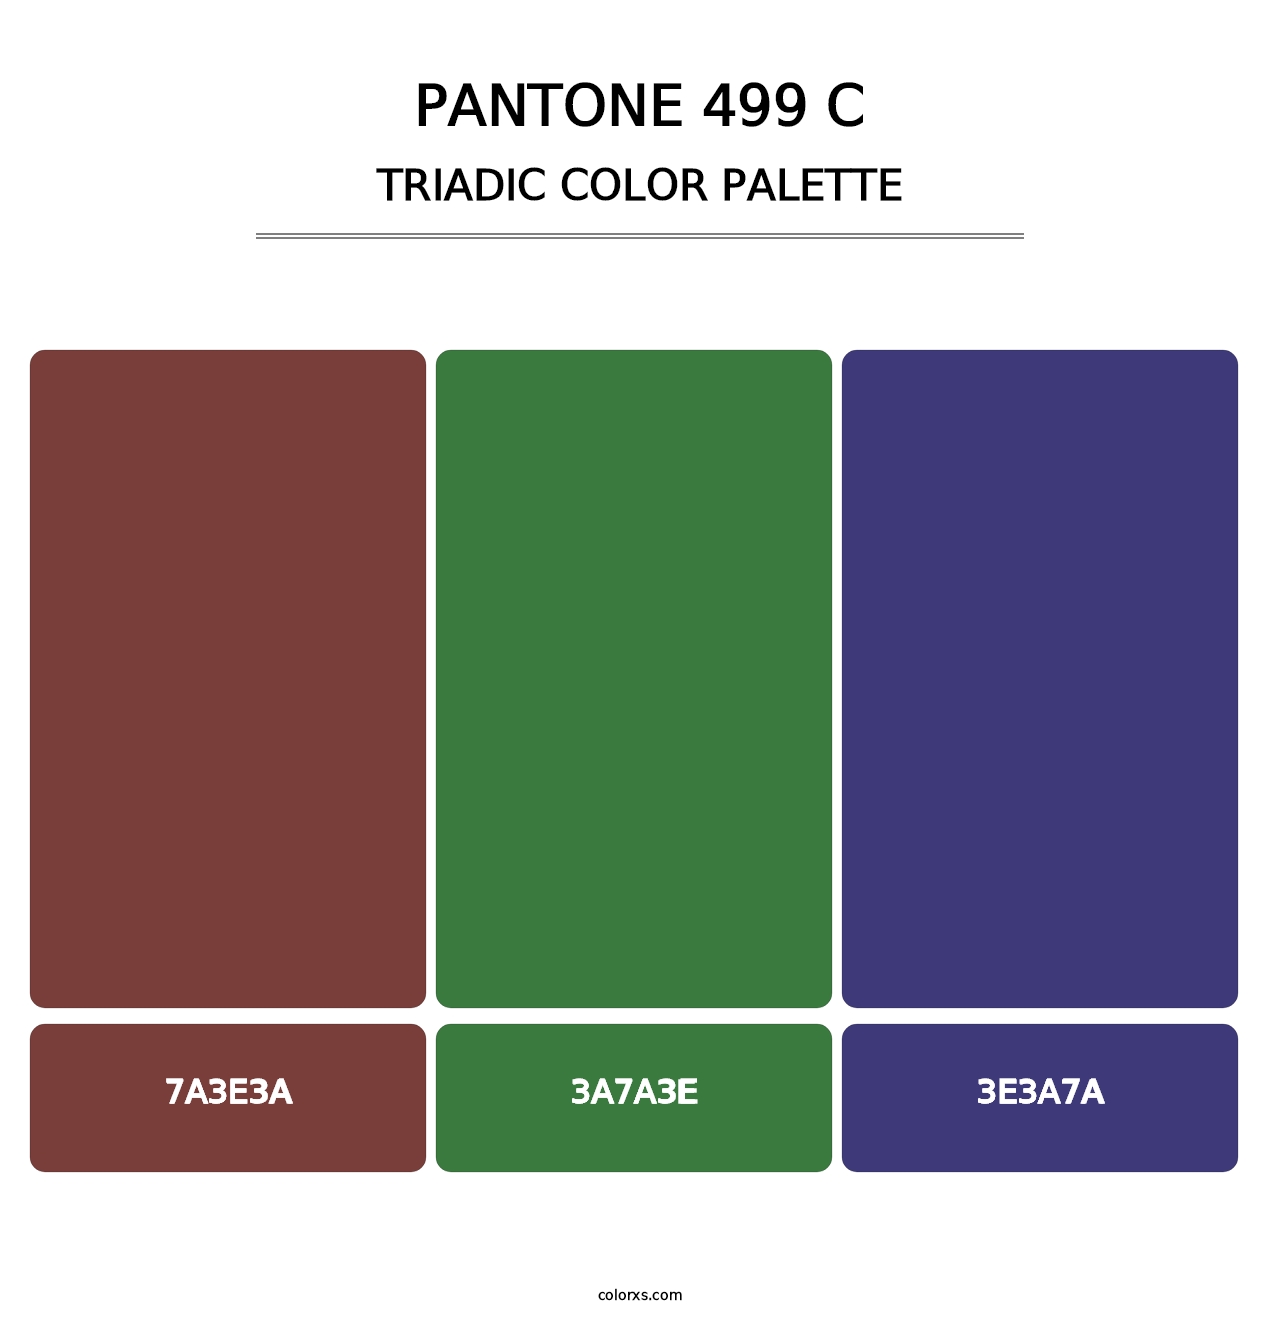 PANTONE 499 C - Triadic Color Palette